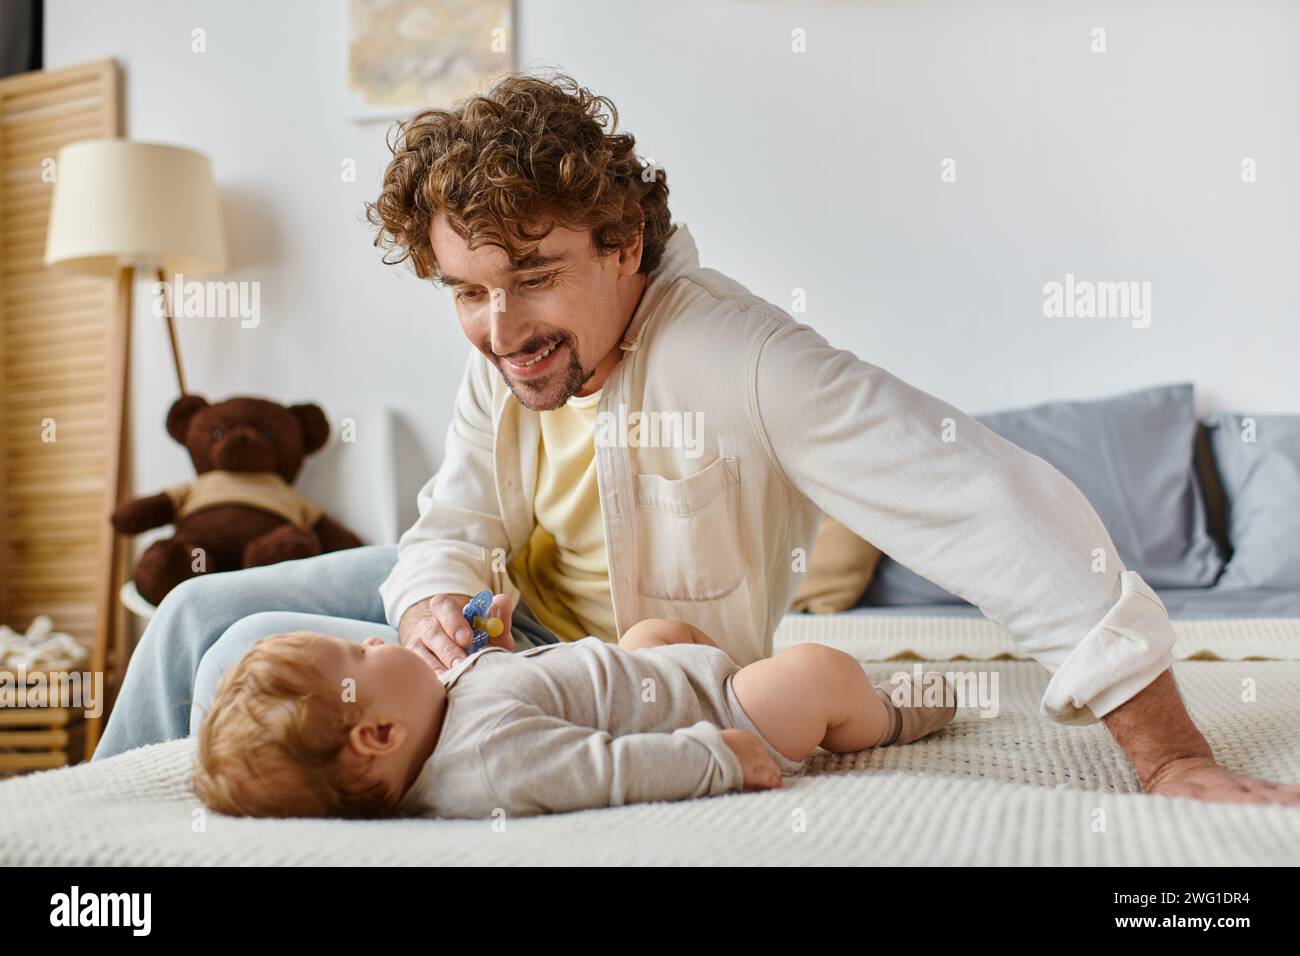 Fröhlicher alleinerziehender Vater, der seinem kleinen Sohn auf dem Bett Schnuller gibt, Vaterschaft und Liebe Stockfoto